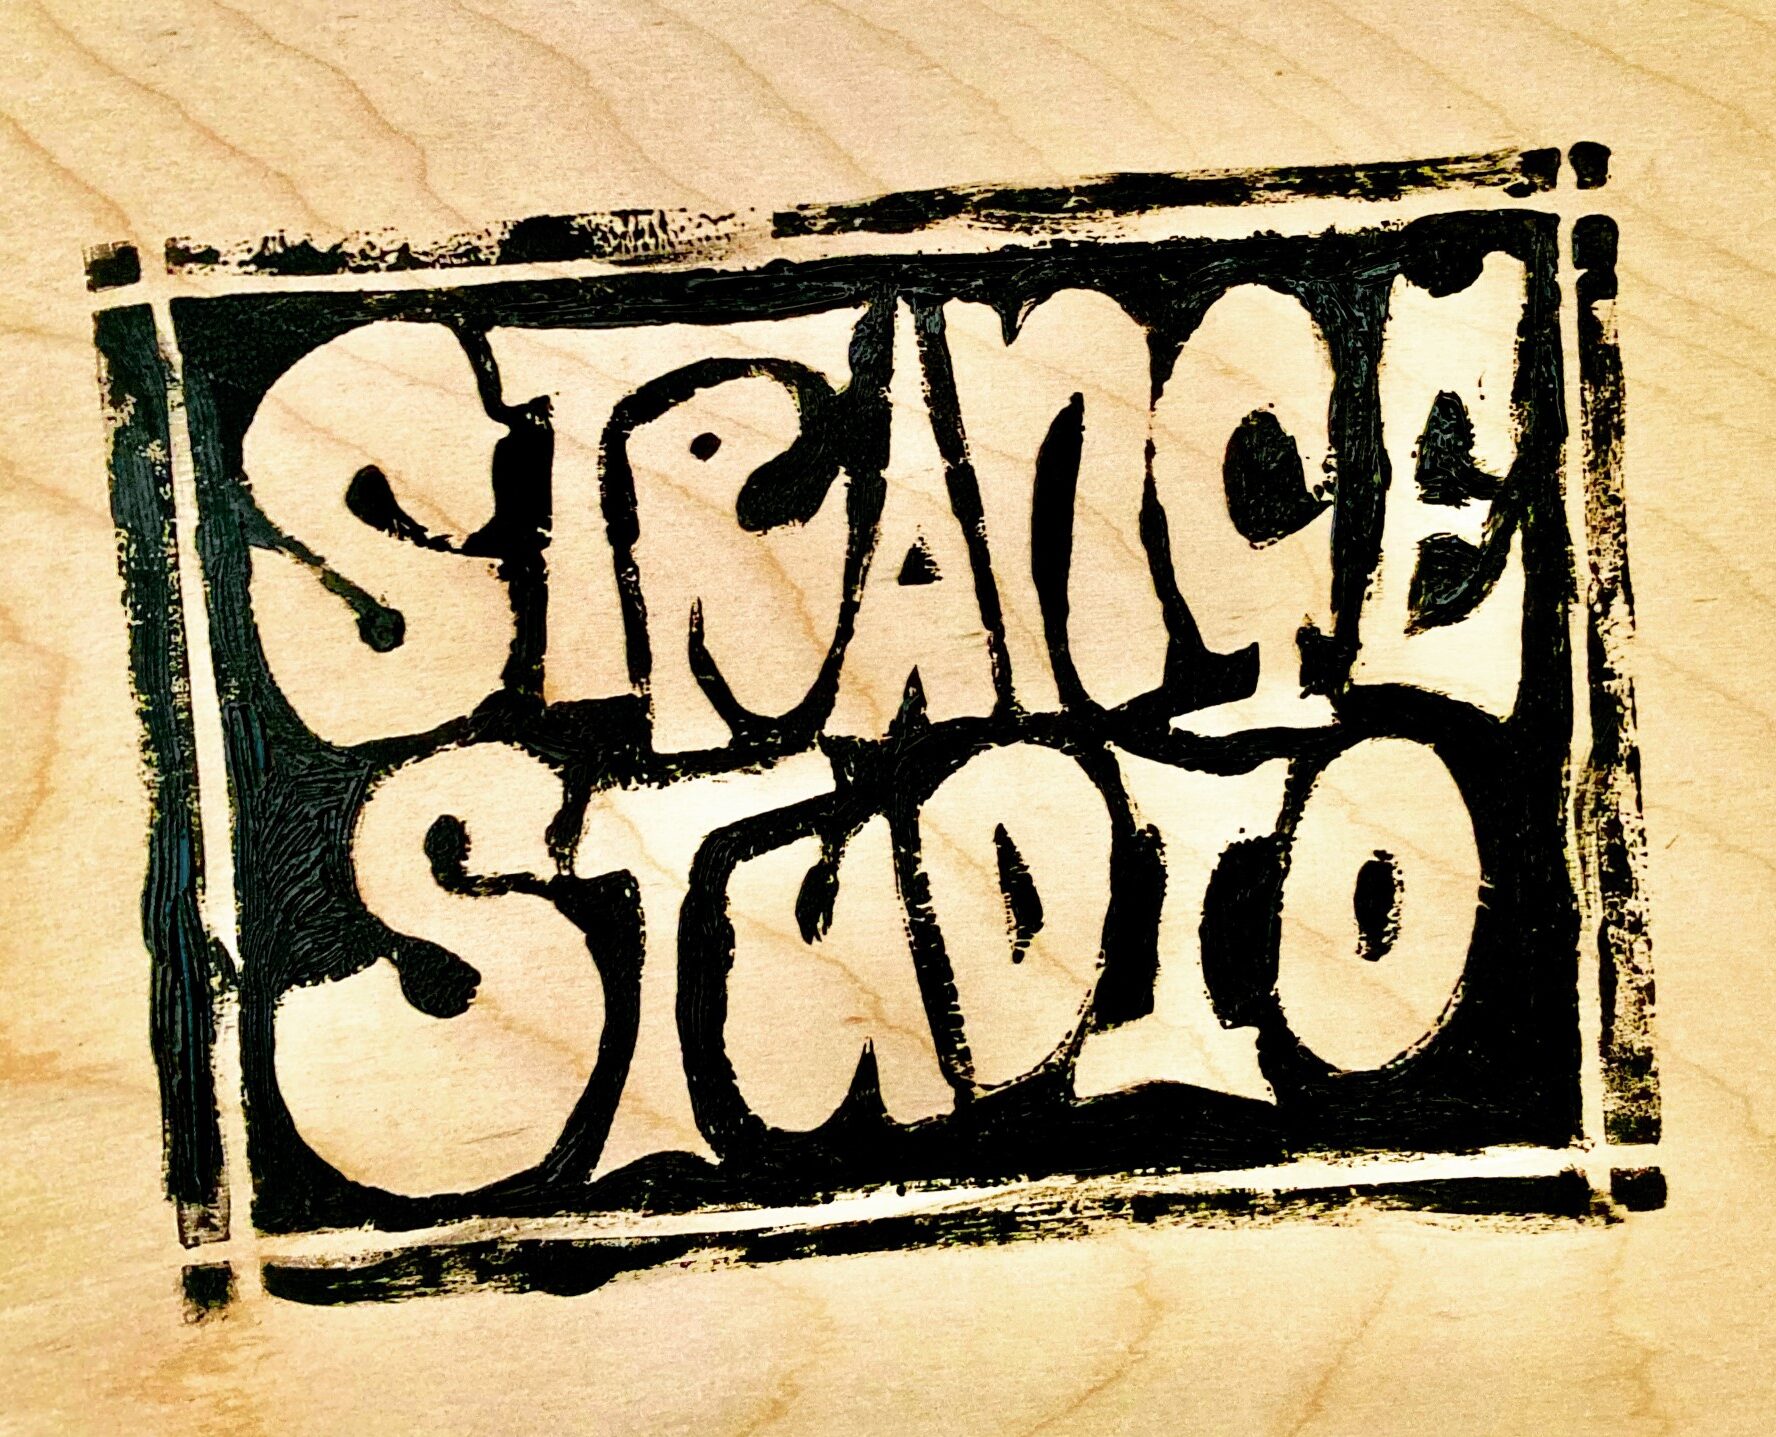 STRANGE STUDIOS